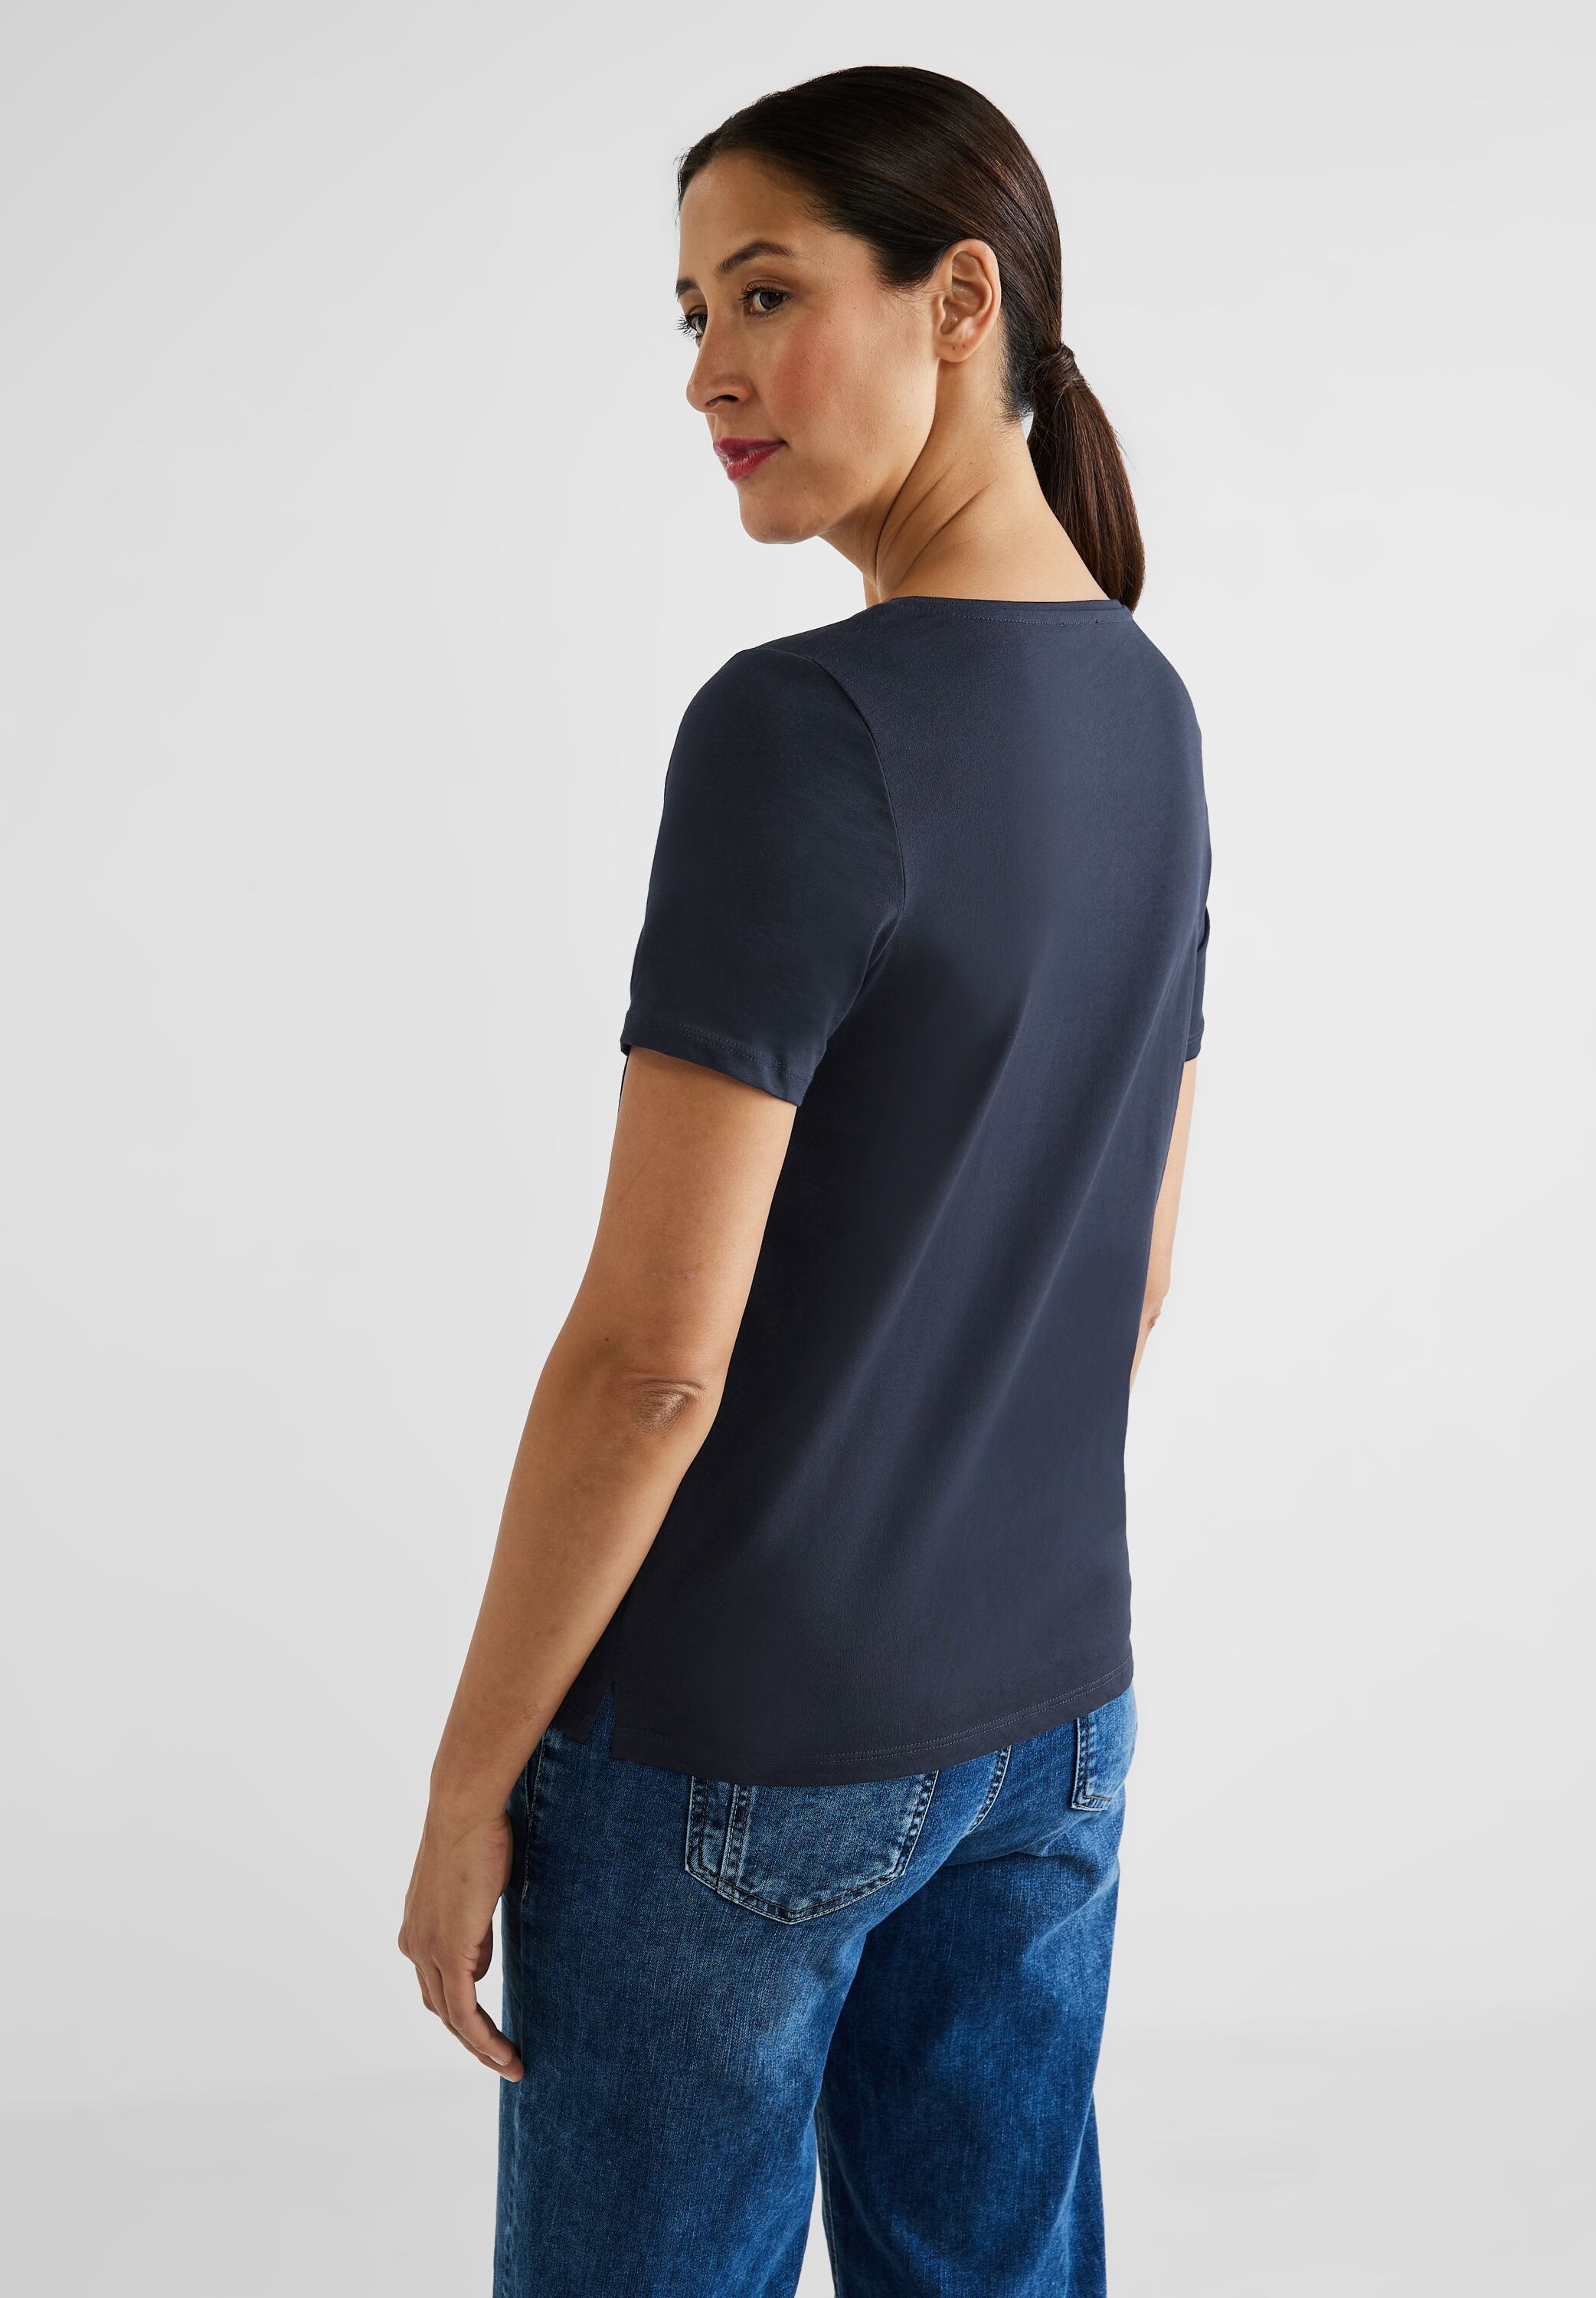 Black STREET reiner | Baumwolle BAUR T-Shirt, ONE aus Friday